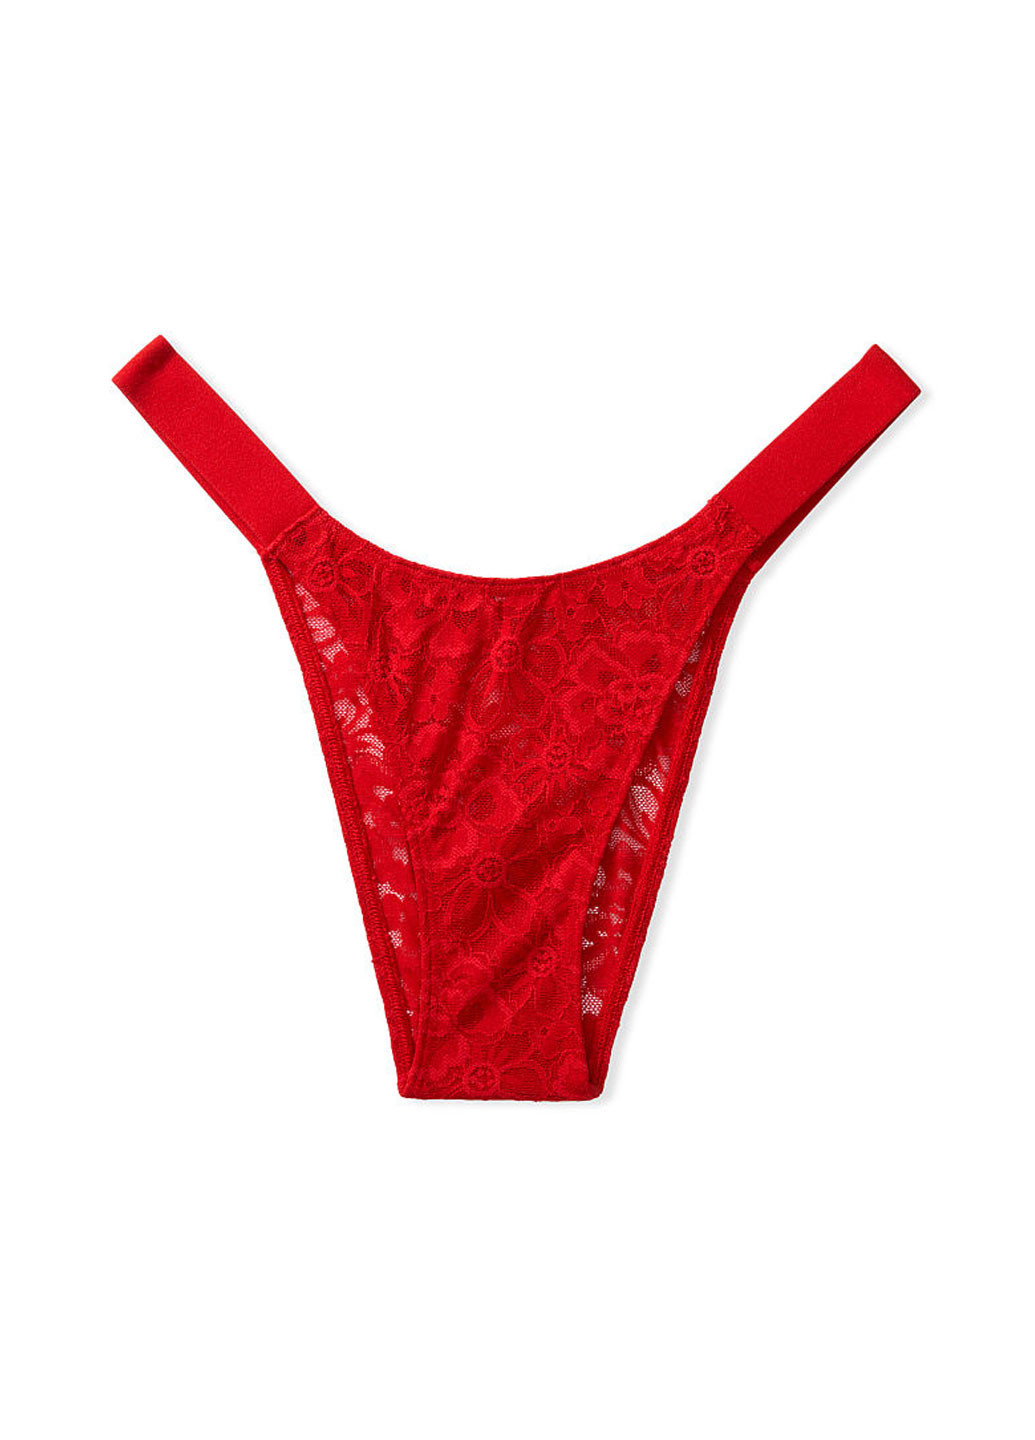 Трусы Victoria's Secret бикини однотонные красные повседневные гипюр, полиамид